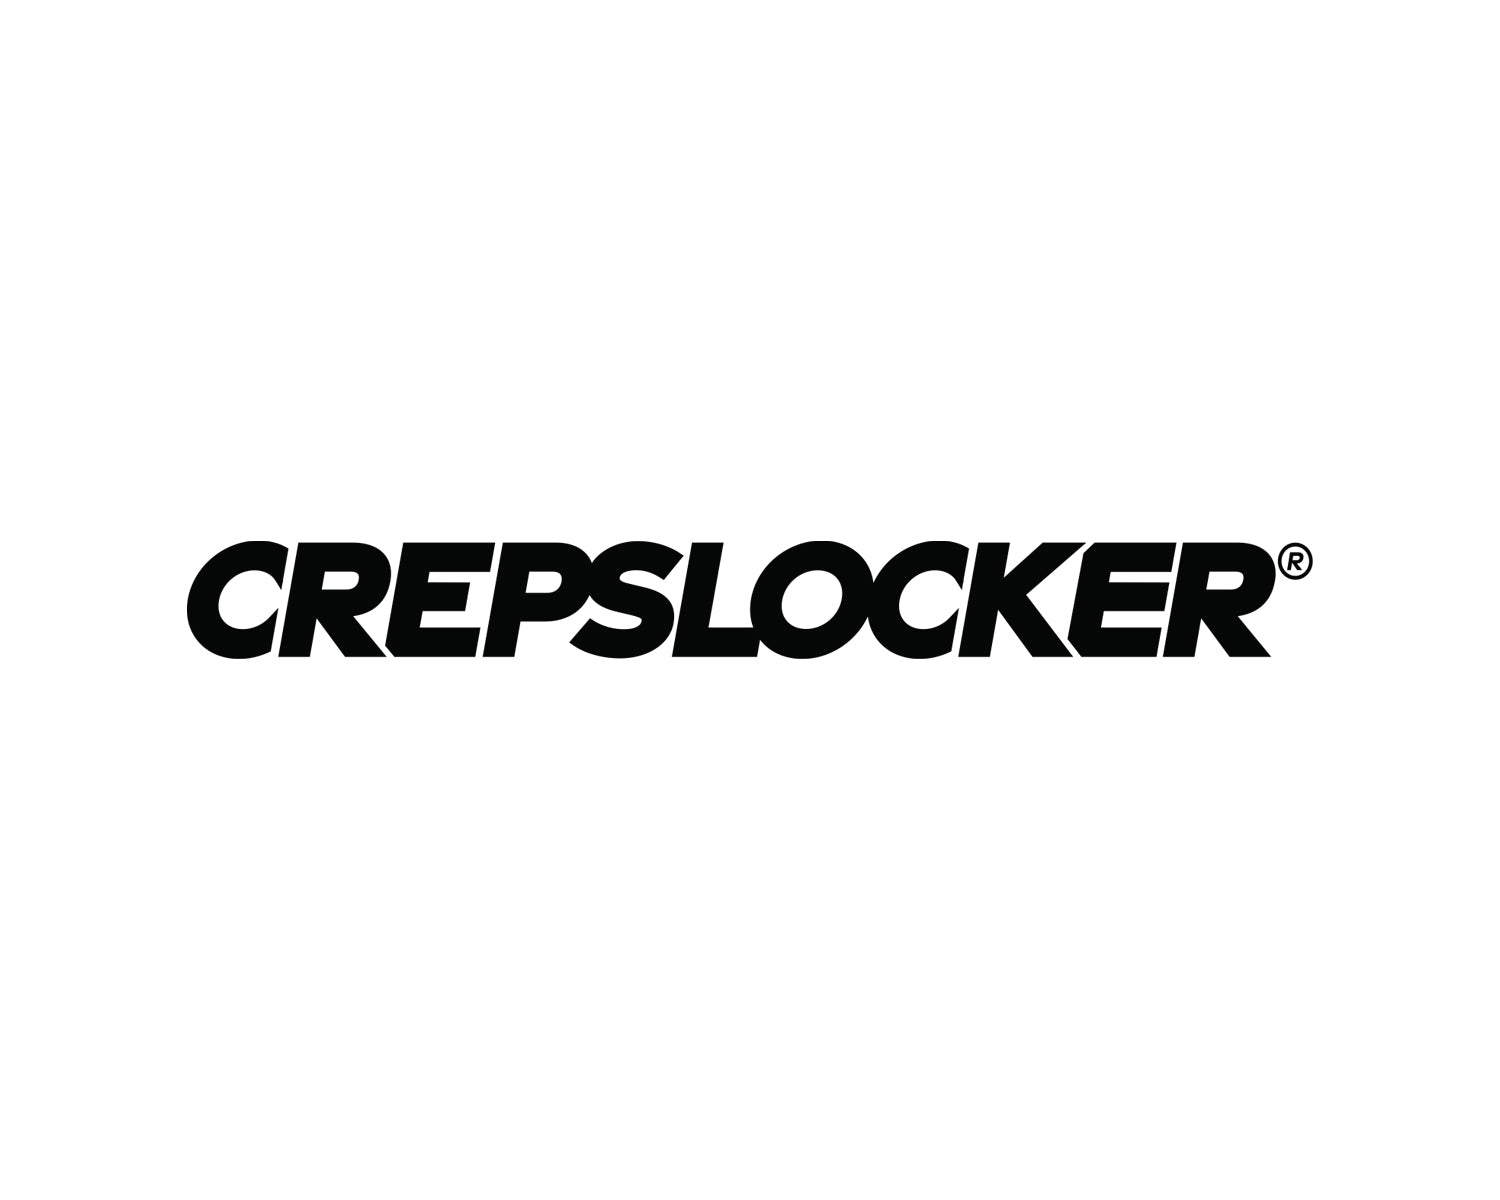 Goyard - Crepslocker, Bags & More